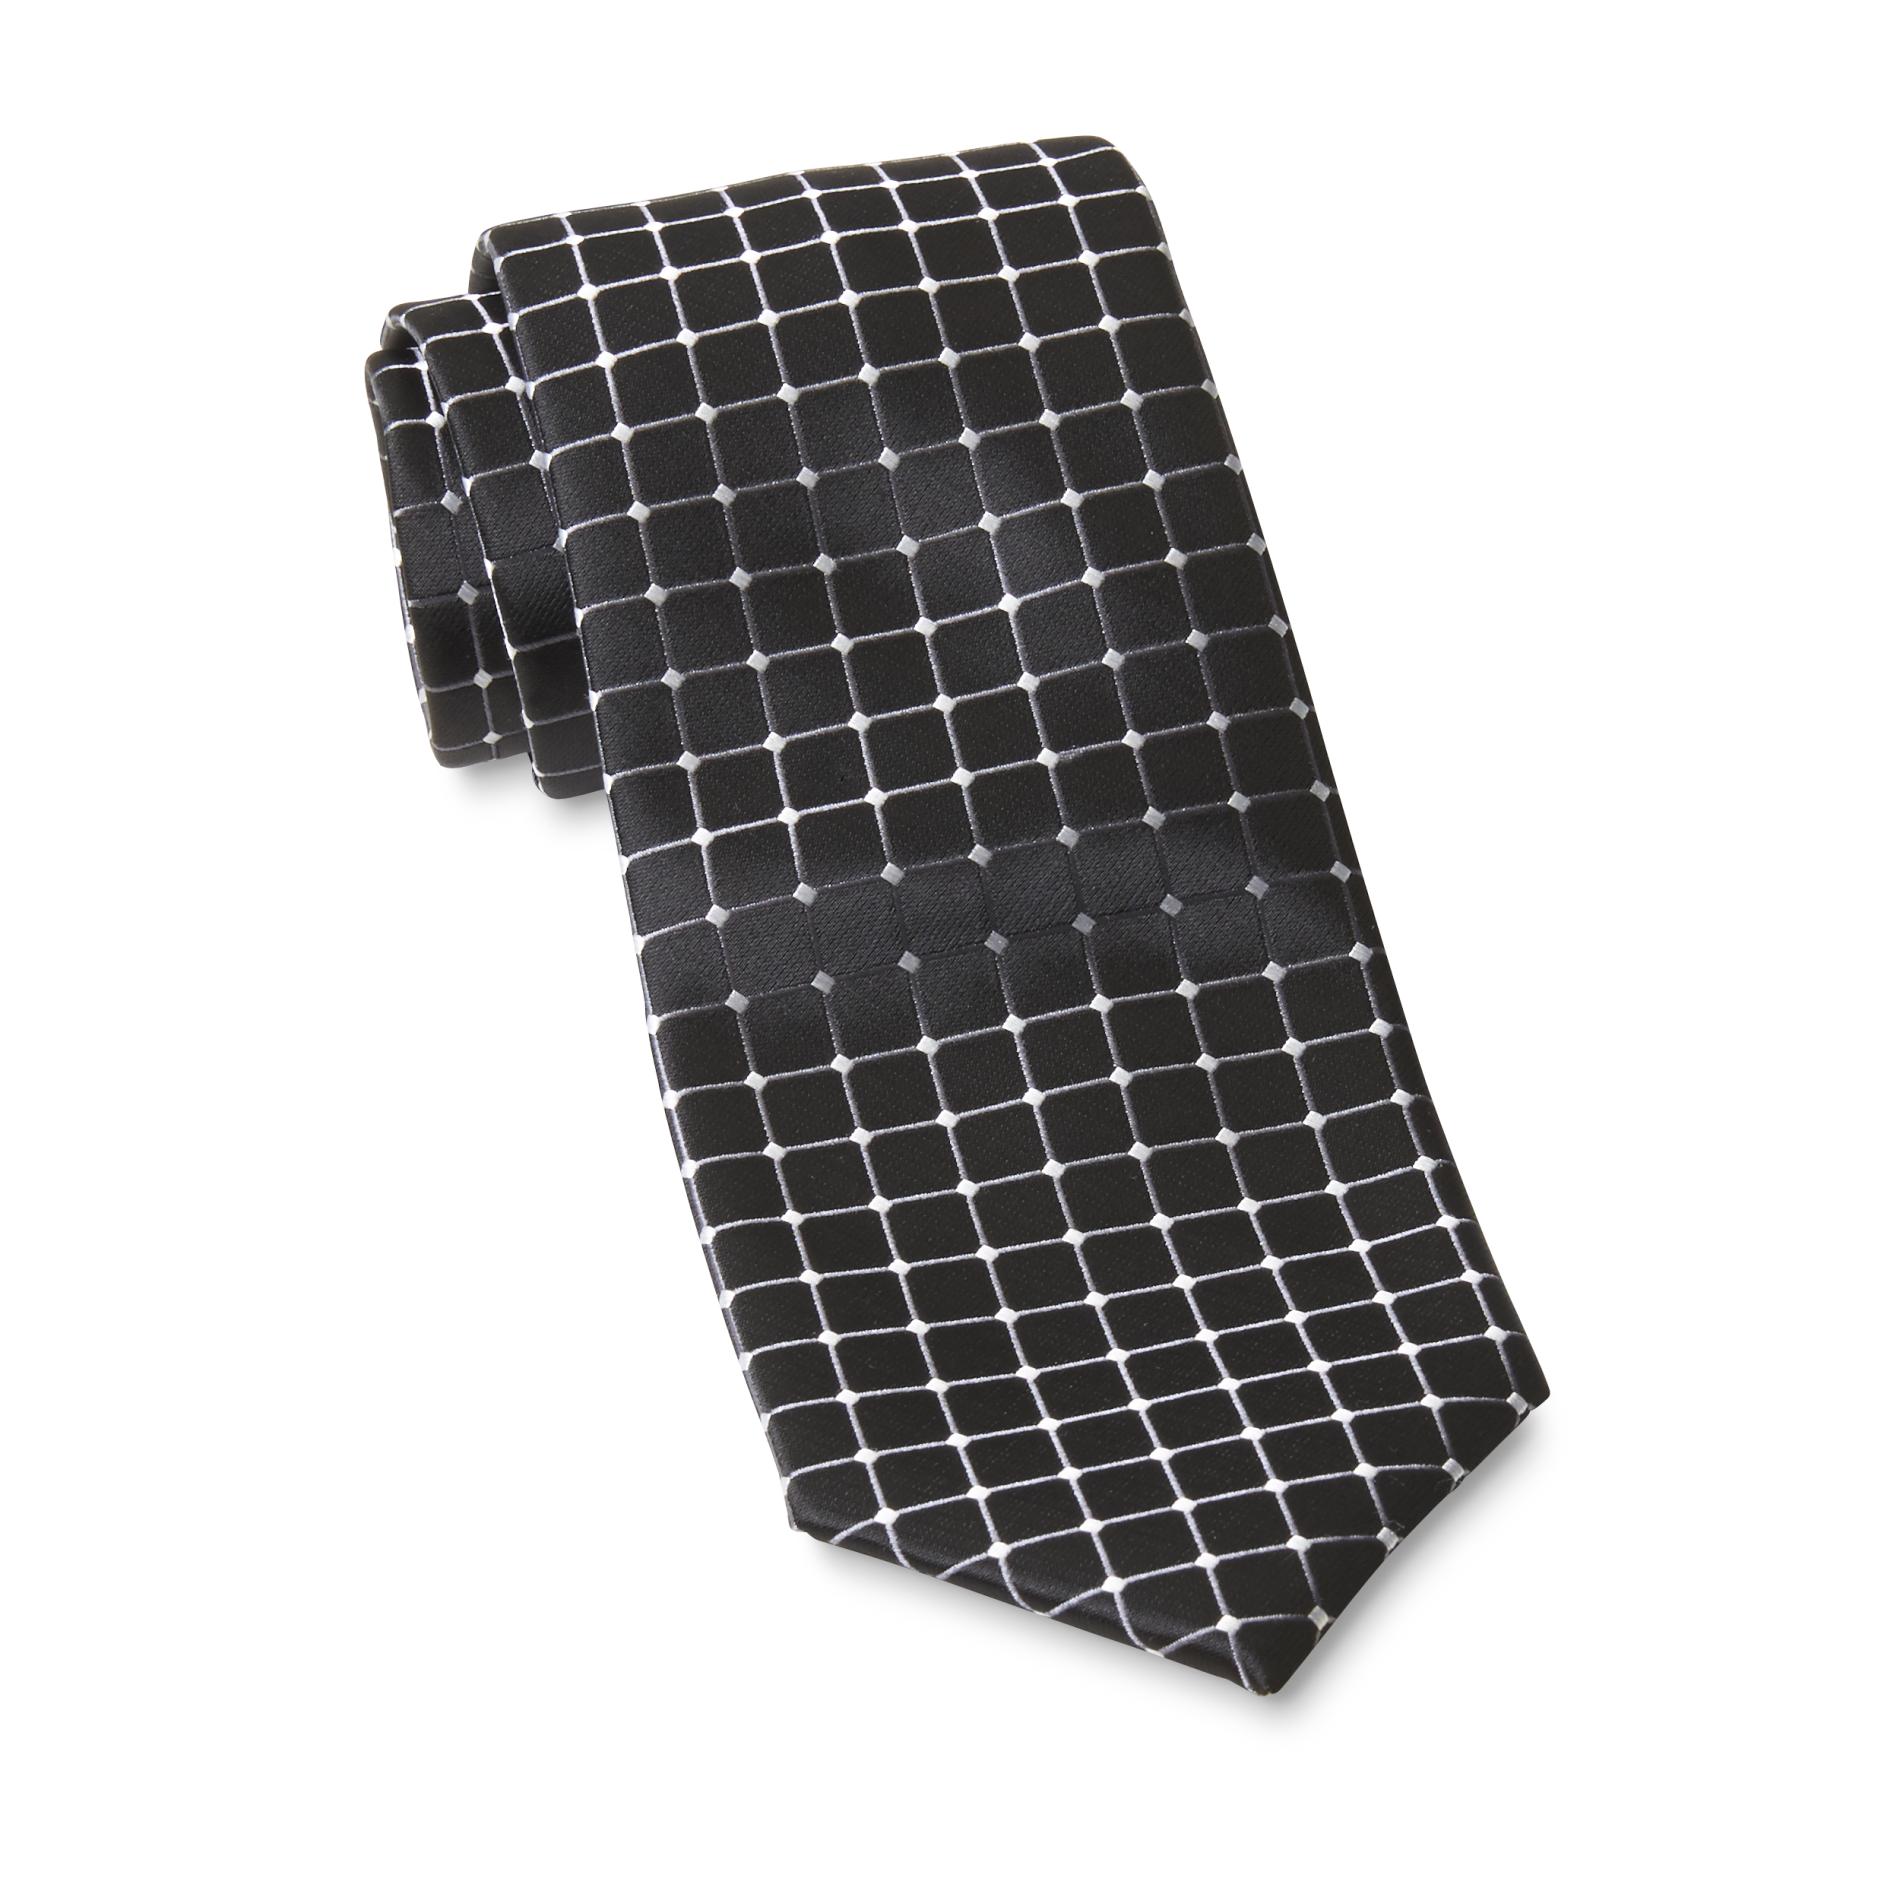 David Taylor Collection Men's Necktie - Grid